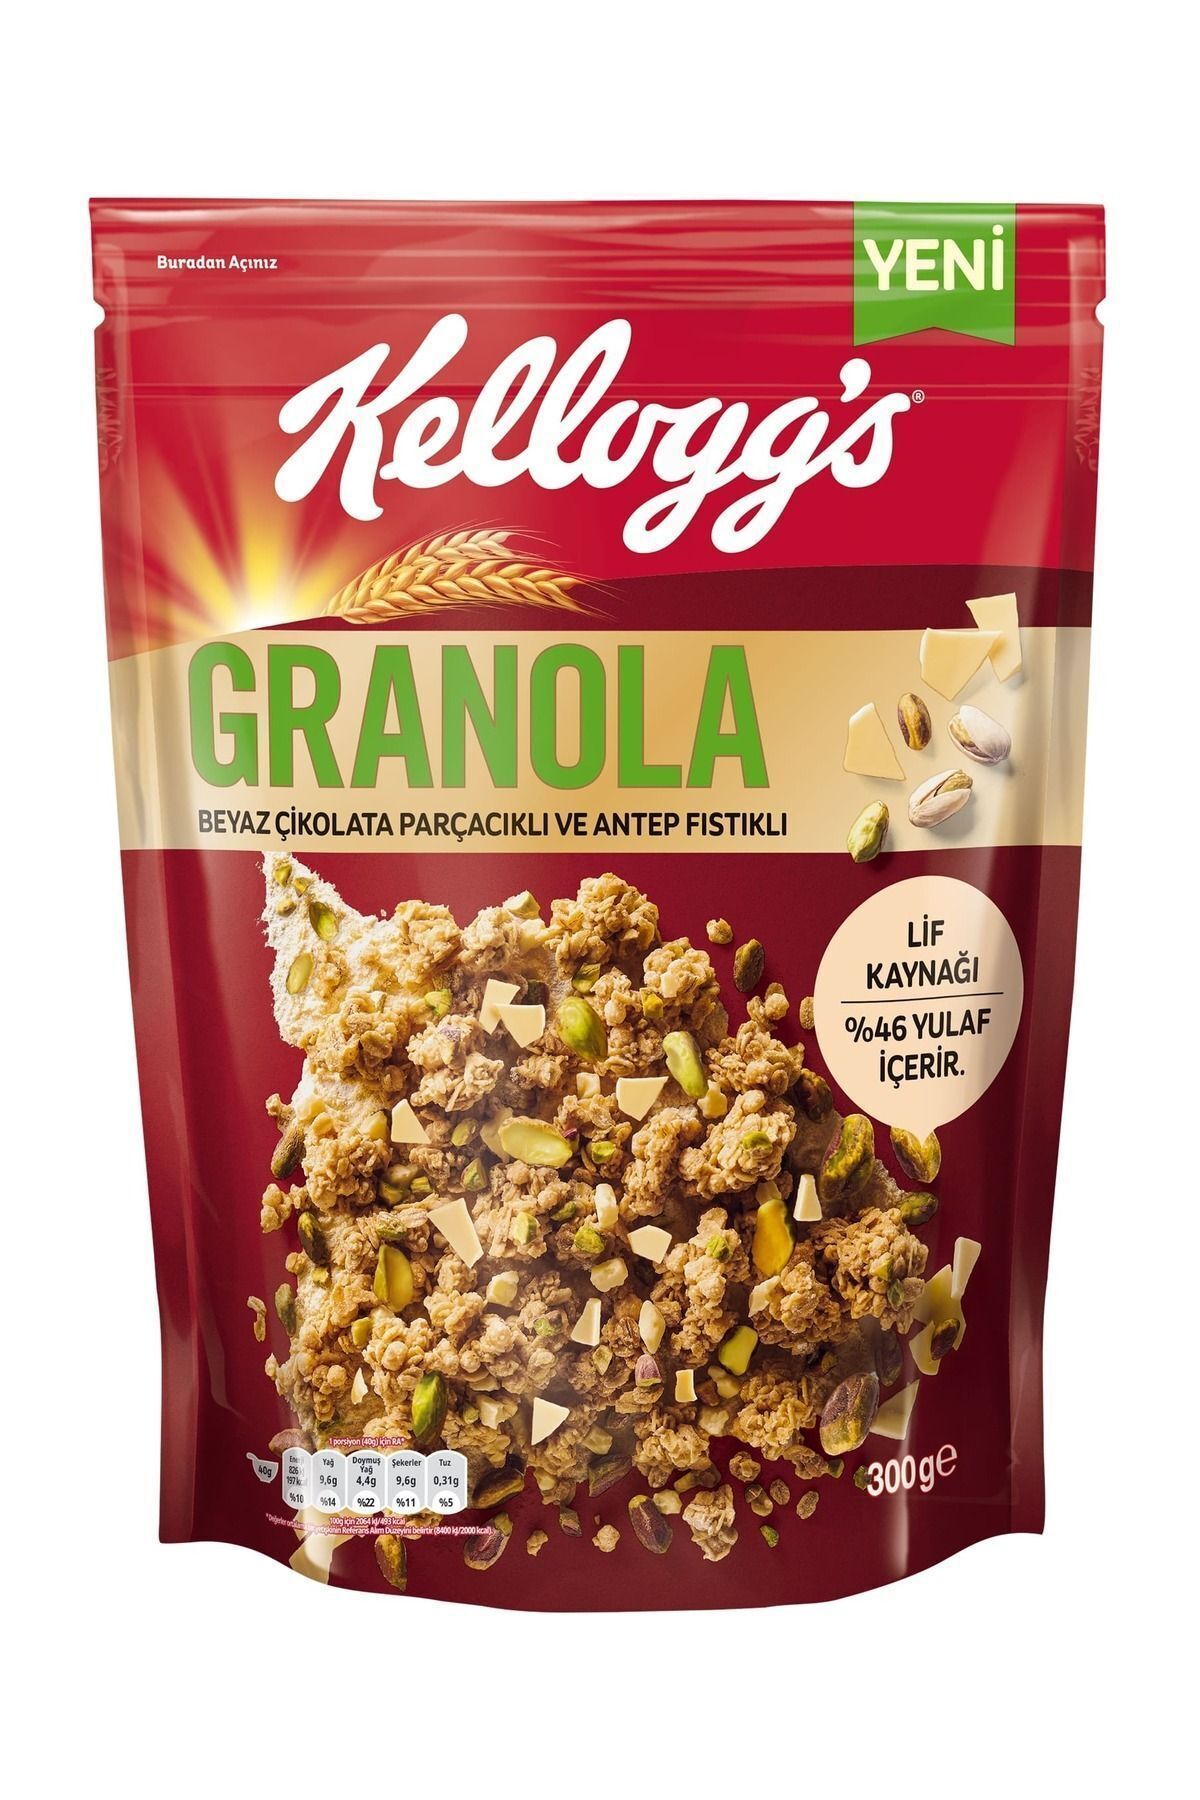 Kellogg's Granola Beyaz Çikolata Parçacıklı Ve Antep Fıstıklı 300 Gr, %46 Yulaf Içerir, Lif Kaynağı